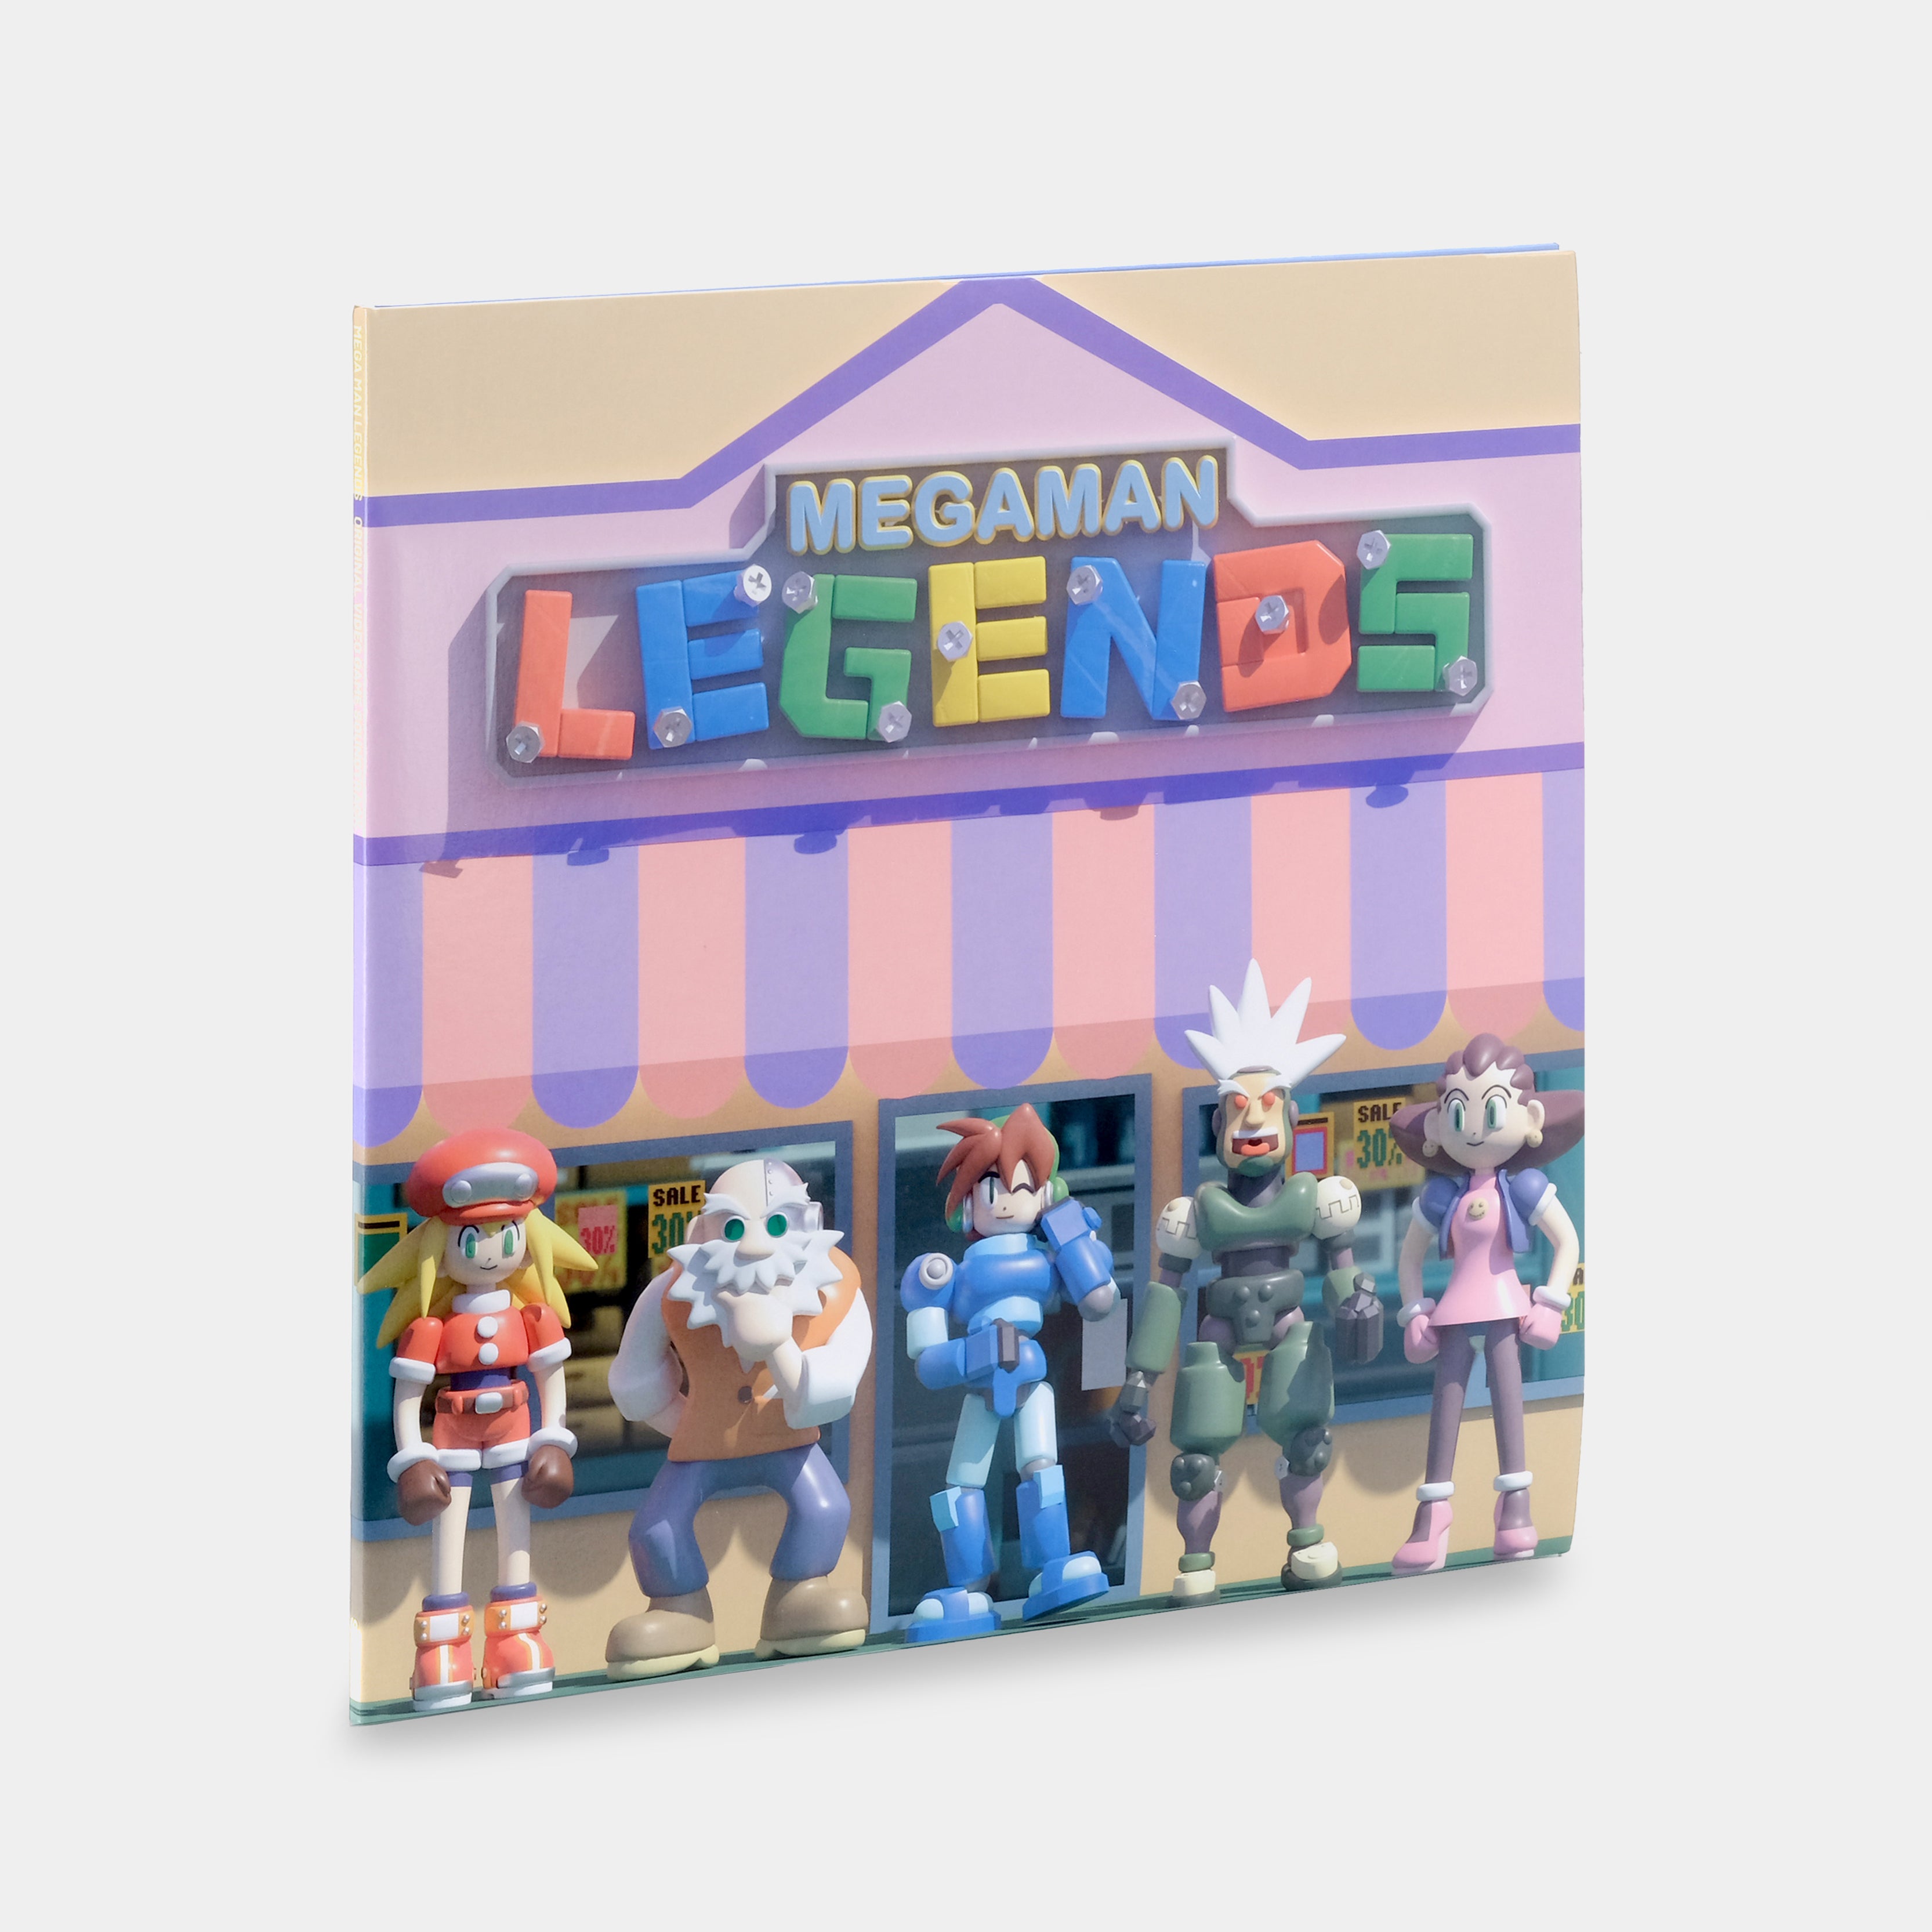 Mega Man Legends (Original Video Game Soundtrack) 2xLP Clear Vinyl Record